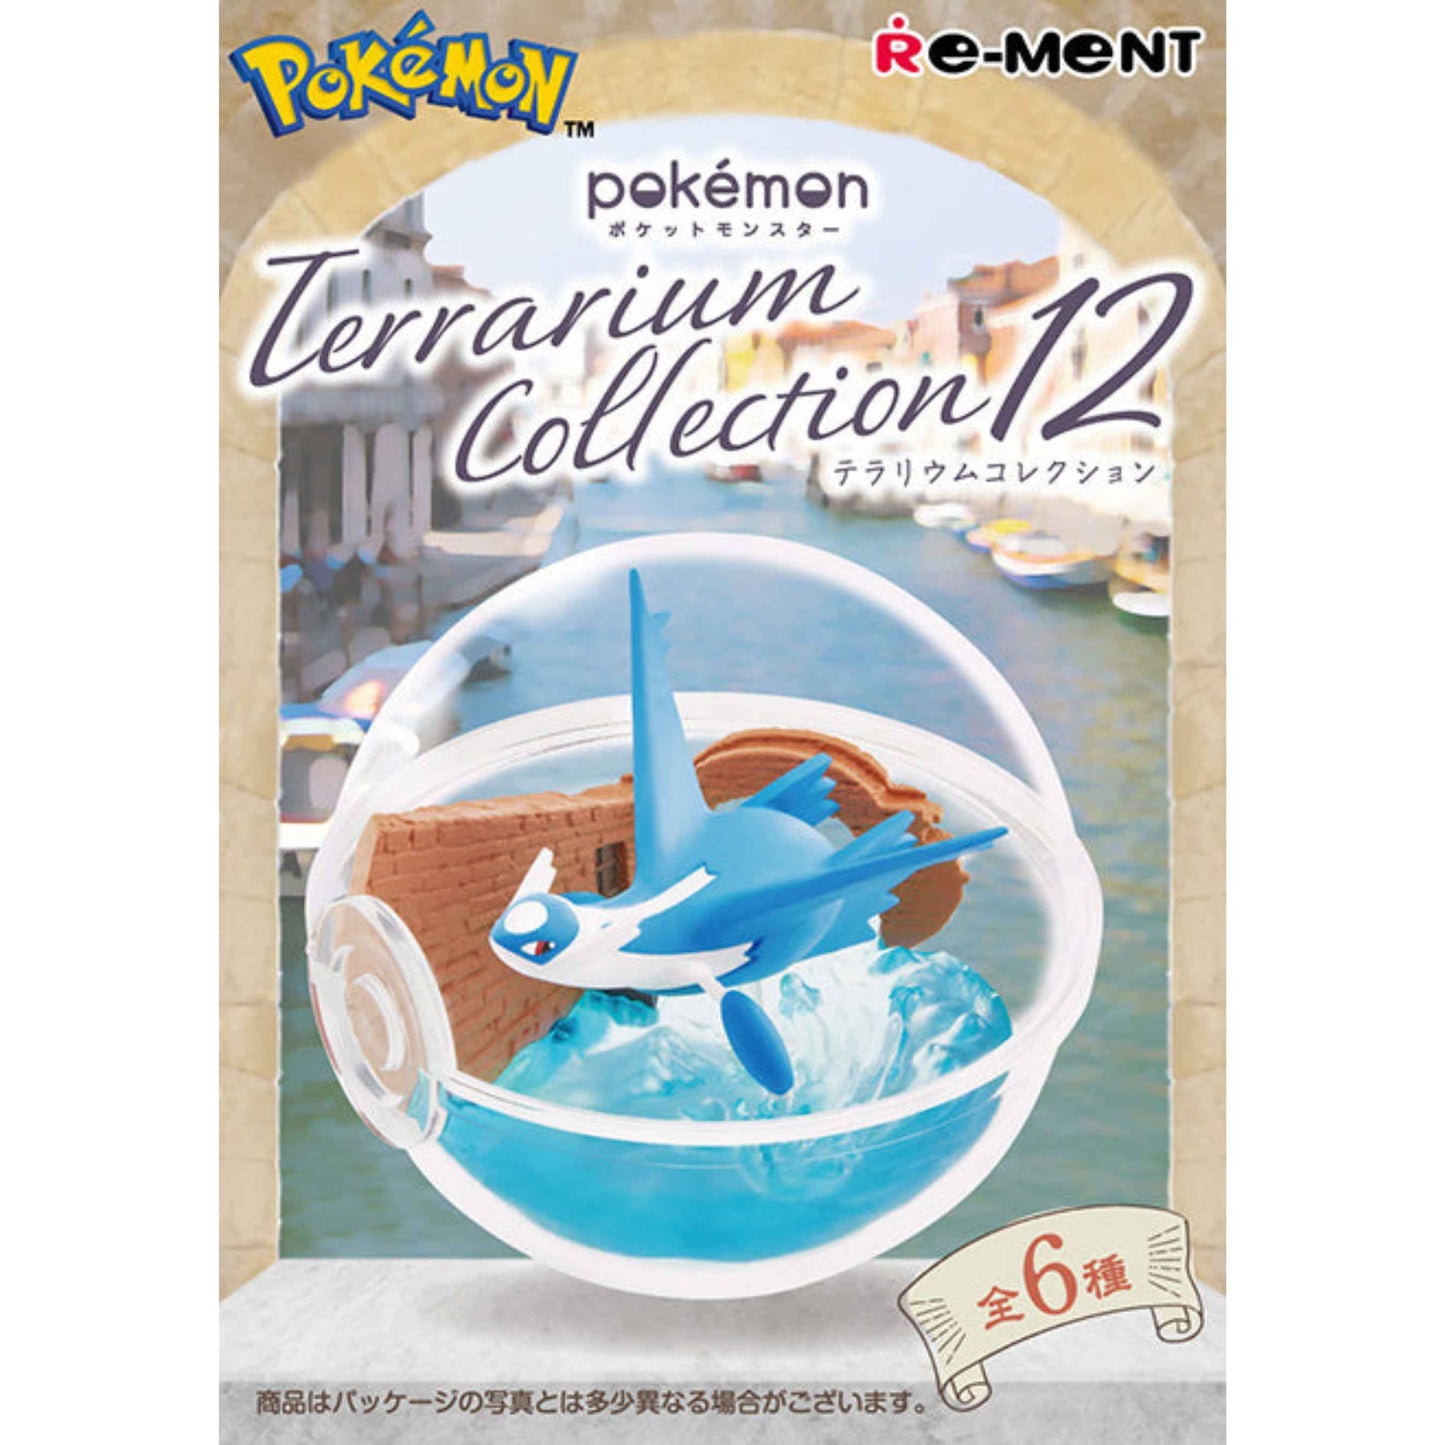 Re-Ment: Pokémon Terrarium Collection 12 Series Blind Box - Whole Set of 6